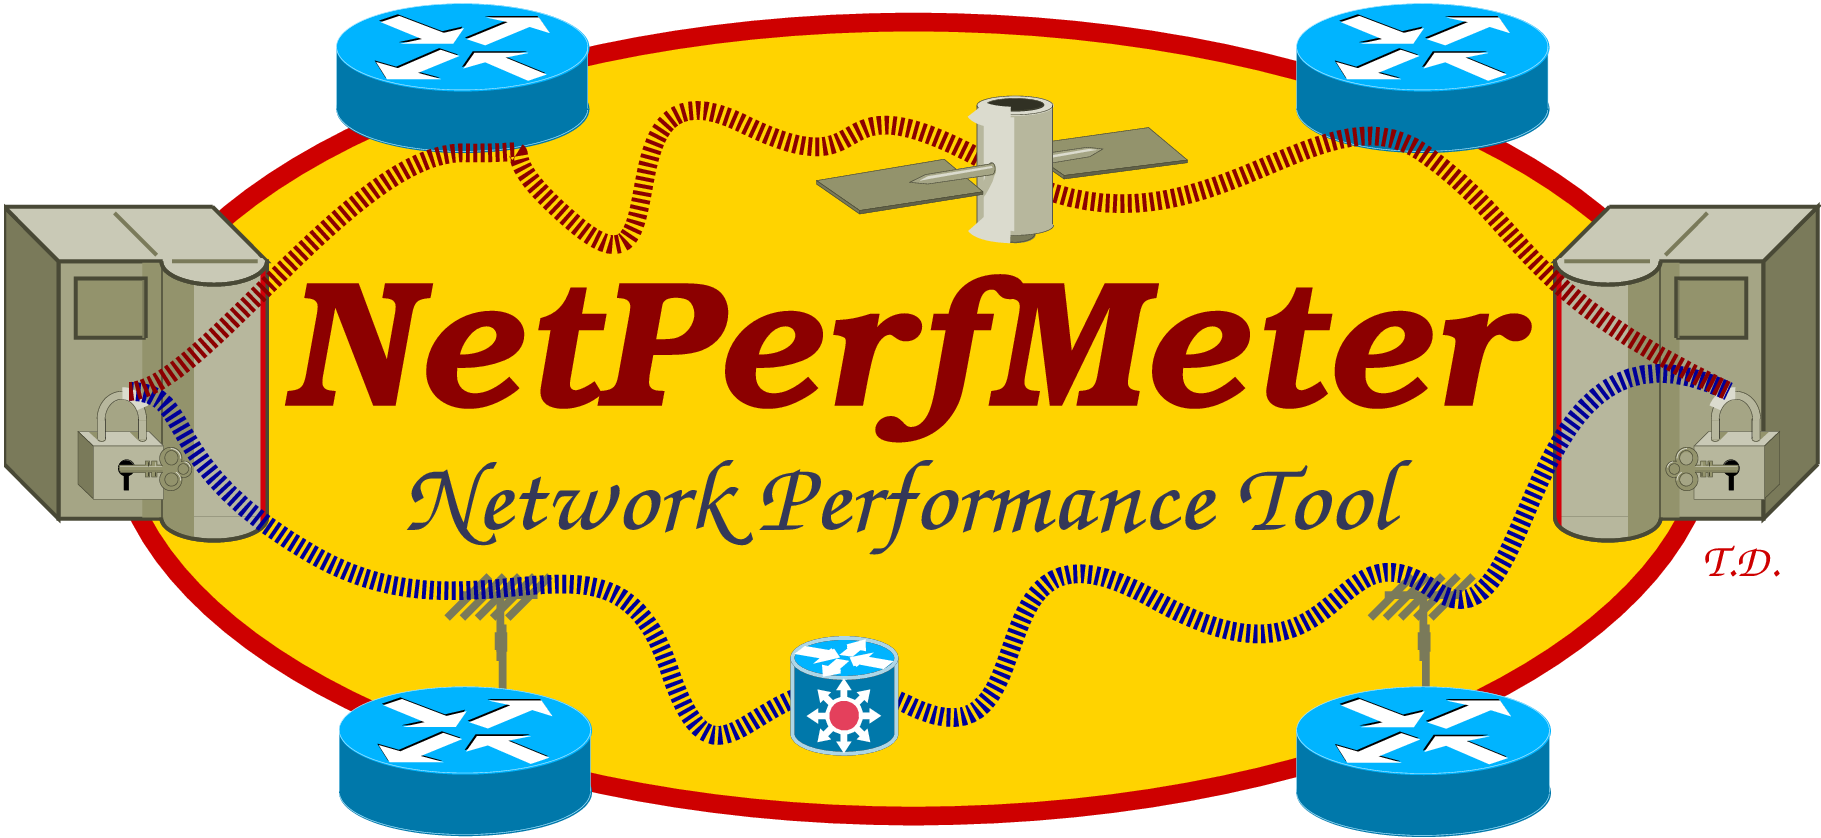 ../../../_images/EN-Logo-NetPerfMeter.png